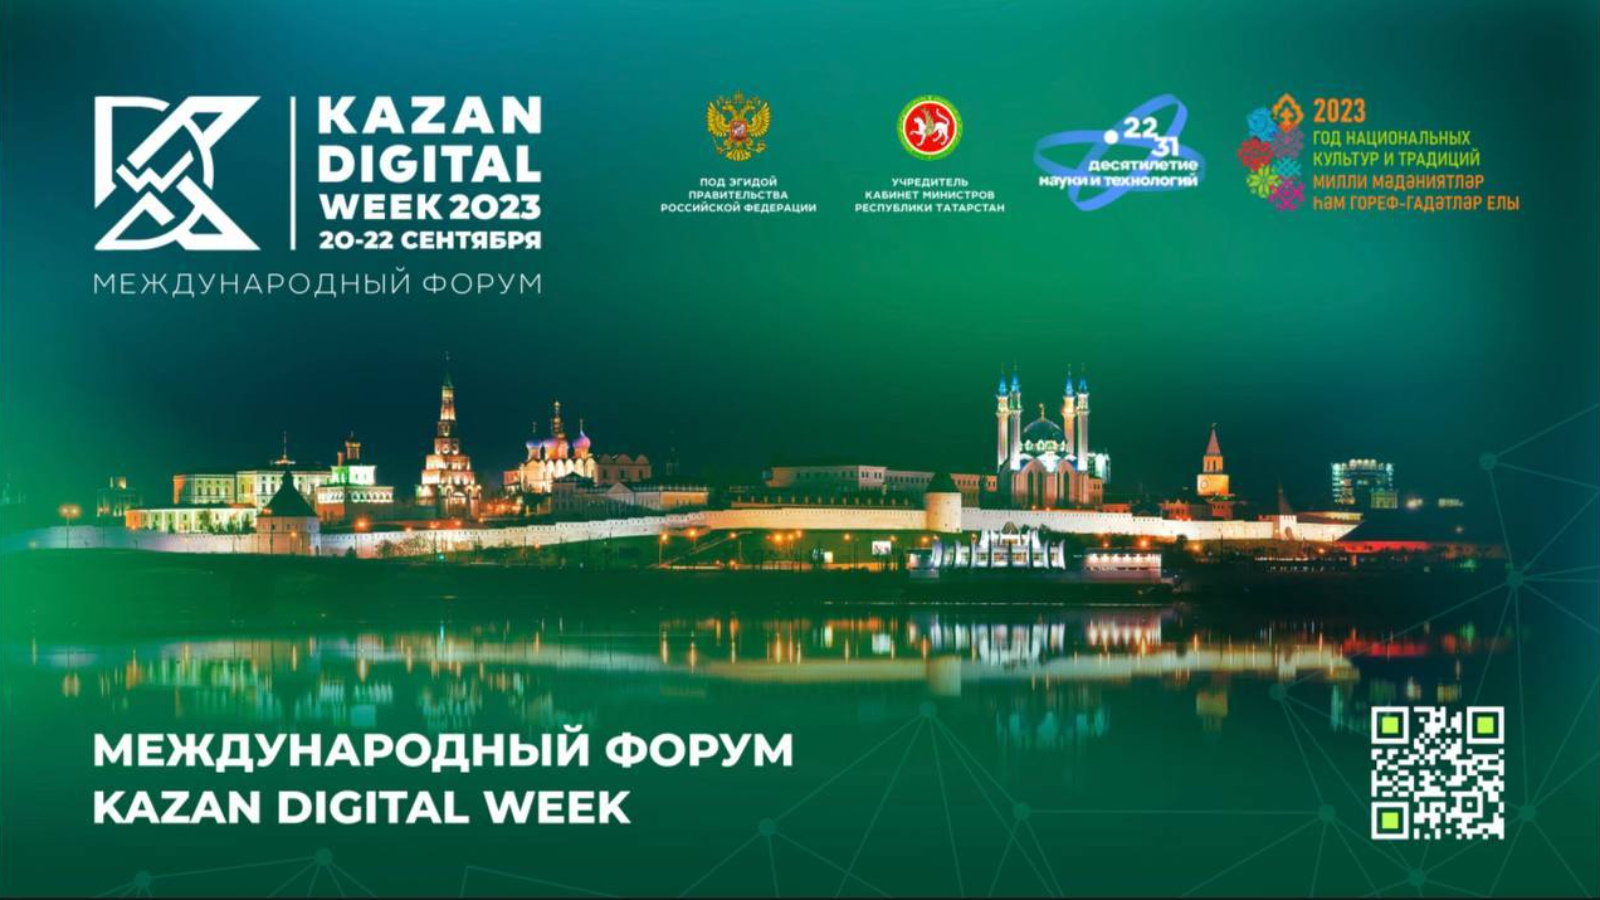 23 сентября казань. Kazan Digital week 2023. Международный форум Kazan Digital week. Международный форум Казань диджитал Вик 2023. Kazan Digital week 2023 логотип.